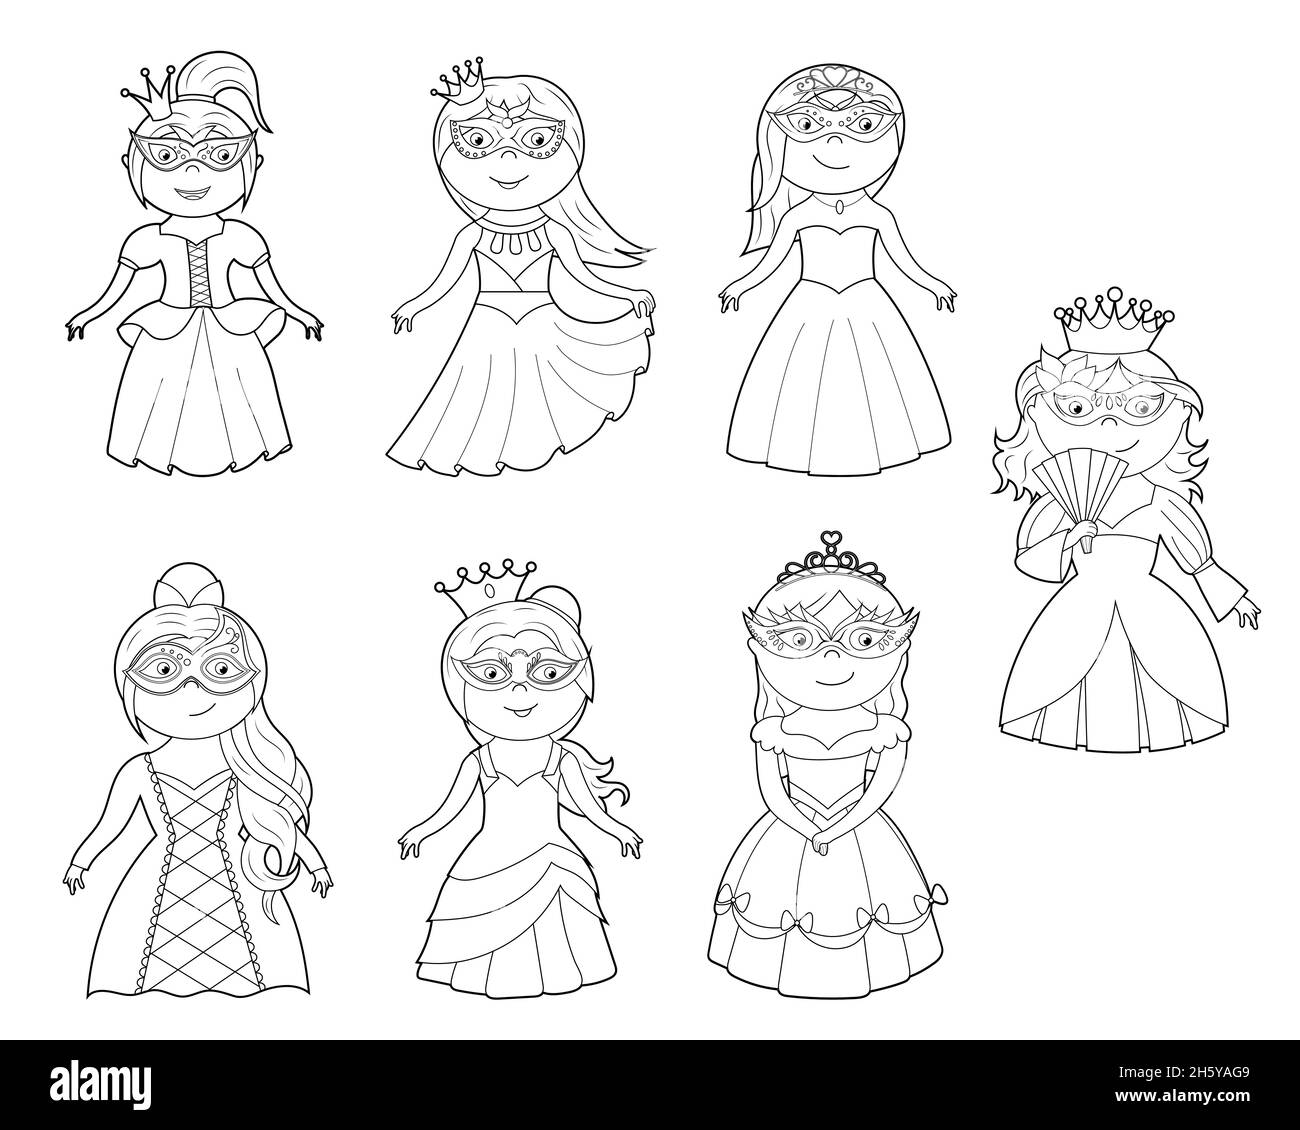 Ein Malbuch, eine niedliche Prinzessin in einem Kleid, eine Maske und eine Krone. vektor-Cartoon-Illustration isoliert auf einem weißen Hintergrund Stock Vektor